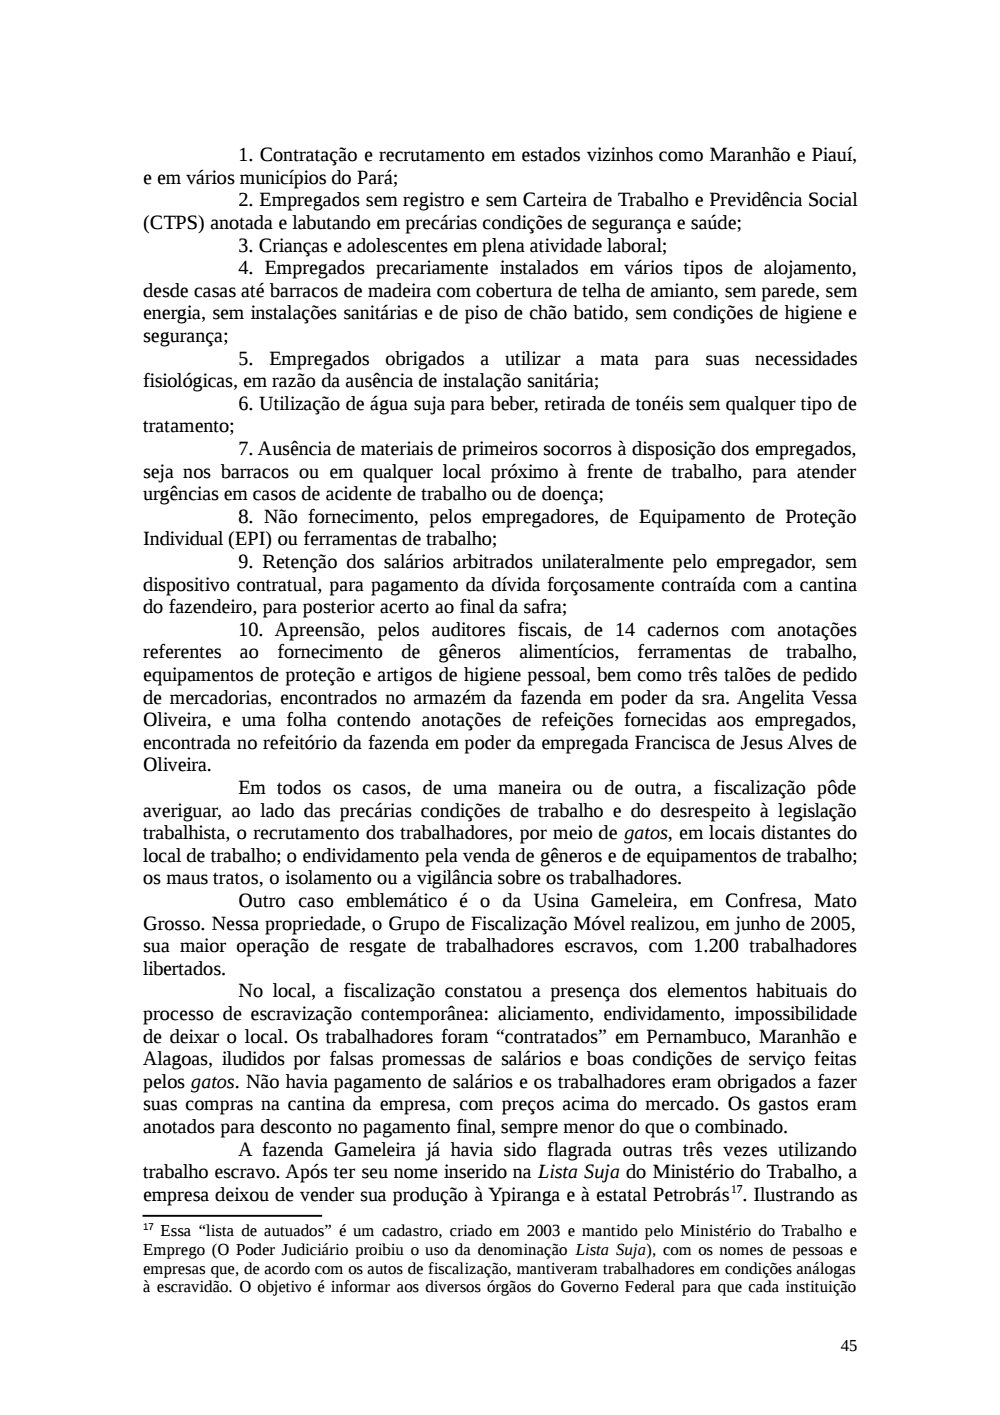 Page 45 from Relatório final da comissão